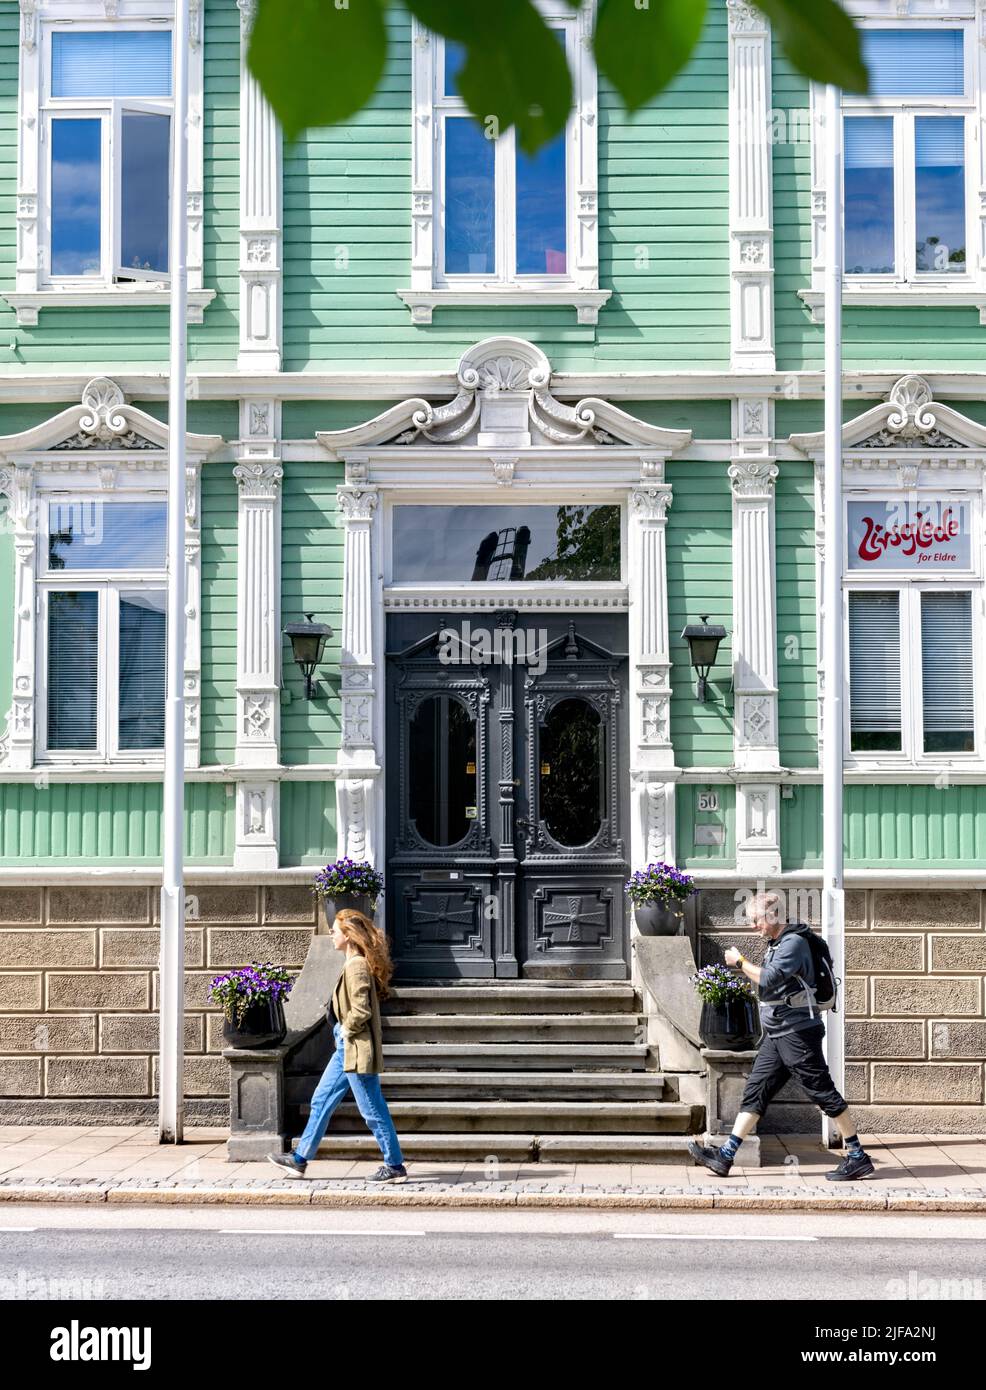 La gente pasa por el edificio de madera verde claro y blanco FRU Lundgreen Bar, Trondheim, Noruega Foto de stock